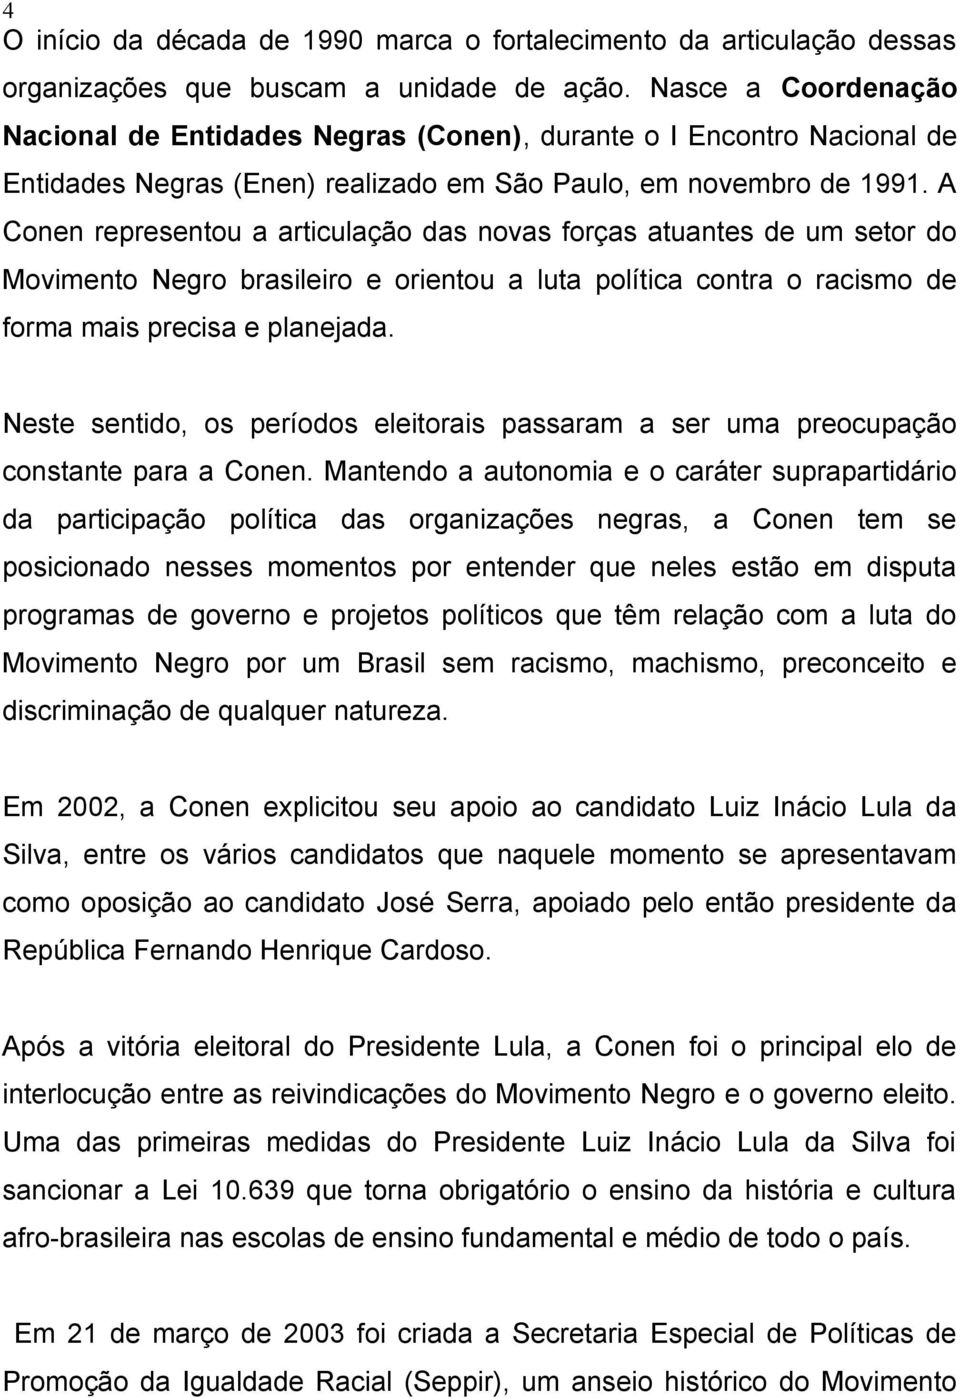 A Conen representou a articulação das novas forças atuantes de um setor do Movimento Negro brasileiro e orientou a luta política contra o racismo de forma mais precisa e planejada.